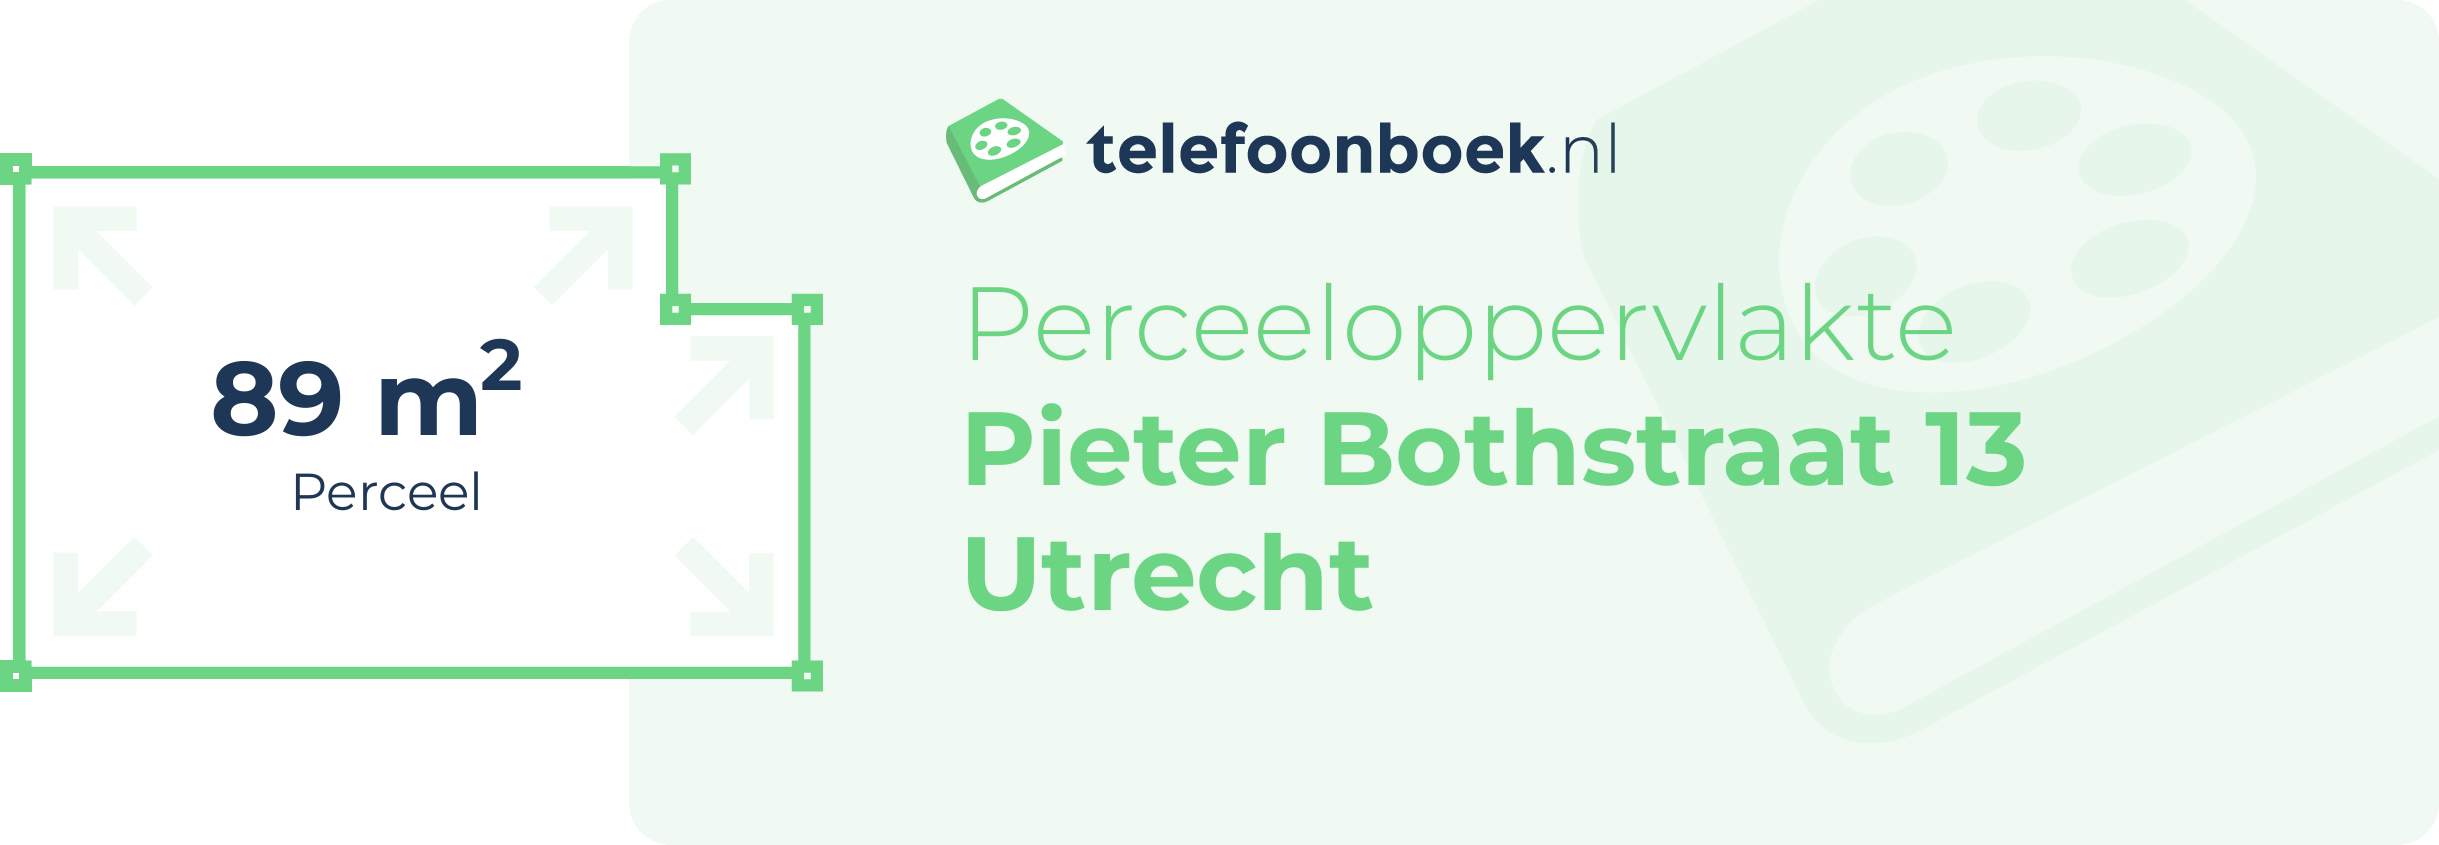 Perceeloppervlakte Pieter Bothstraat 13 Utrecht